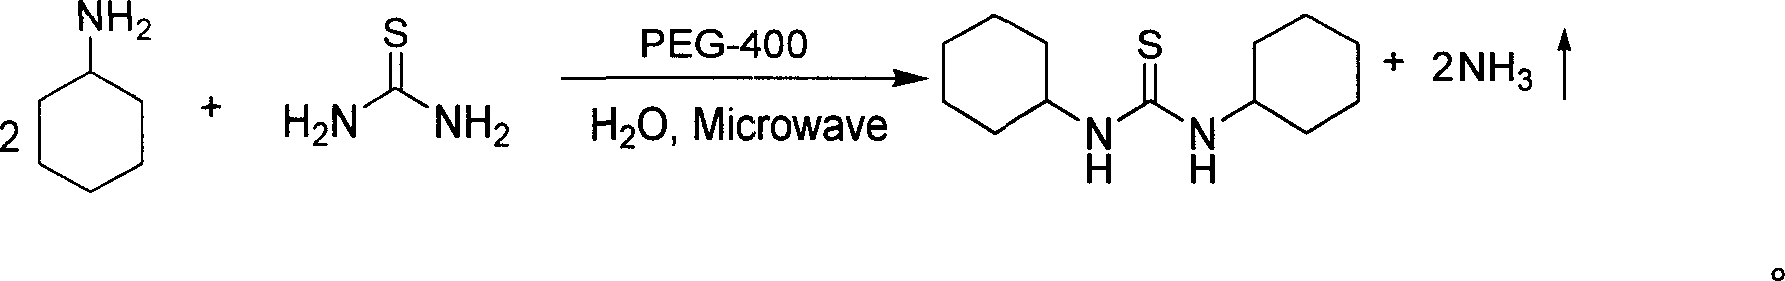 N, N'- dicyclohexyl thiourea microwave synthesis method